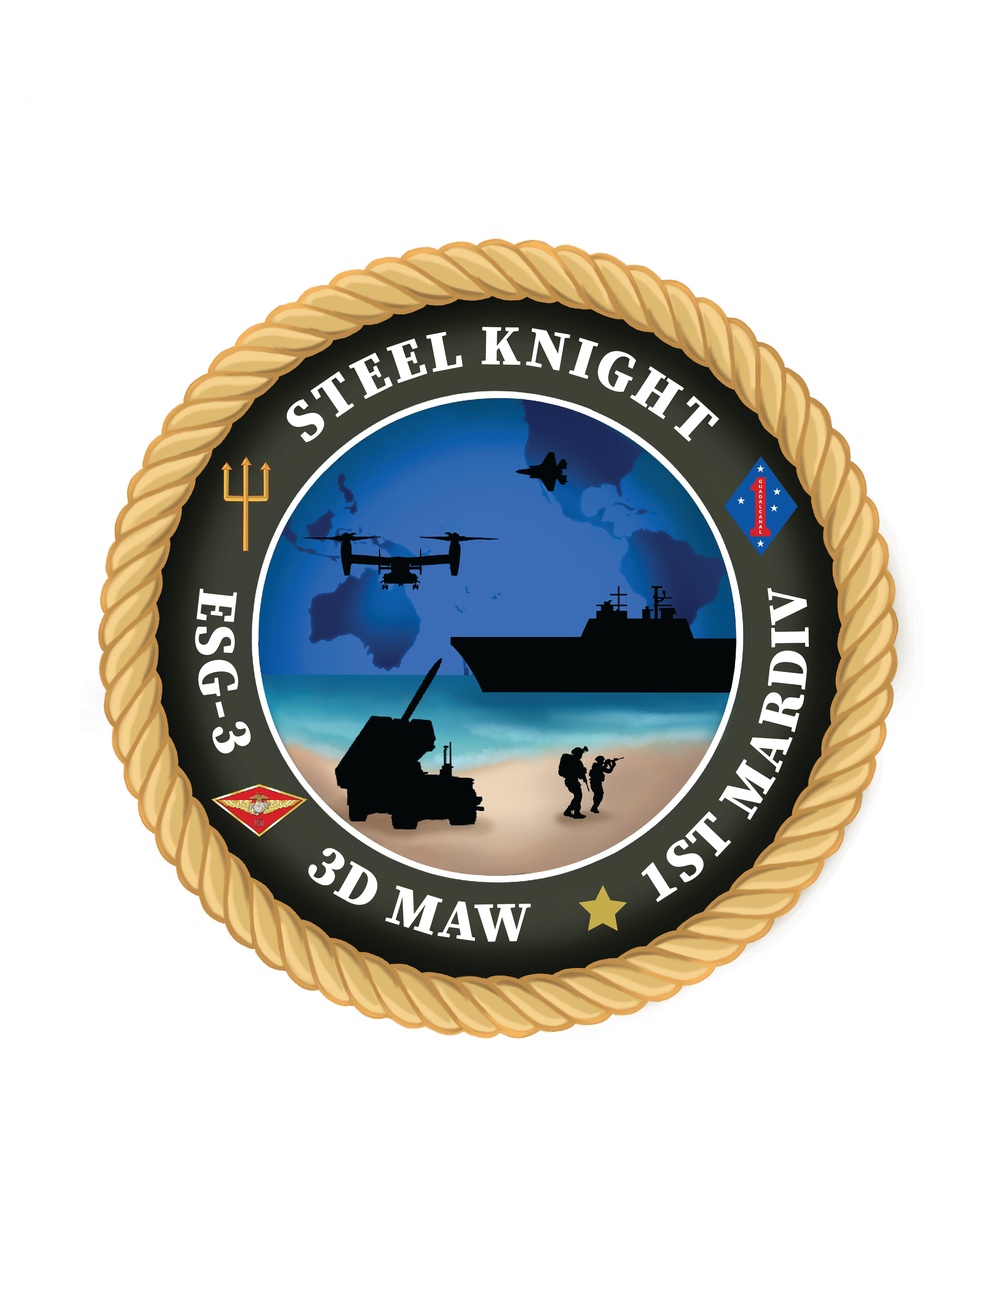 Steel Knight logo